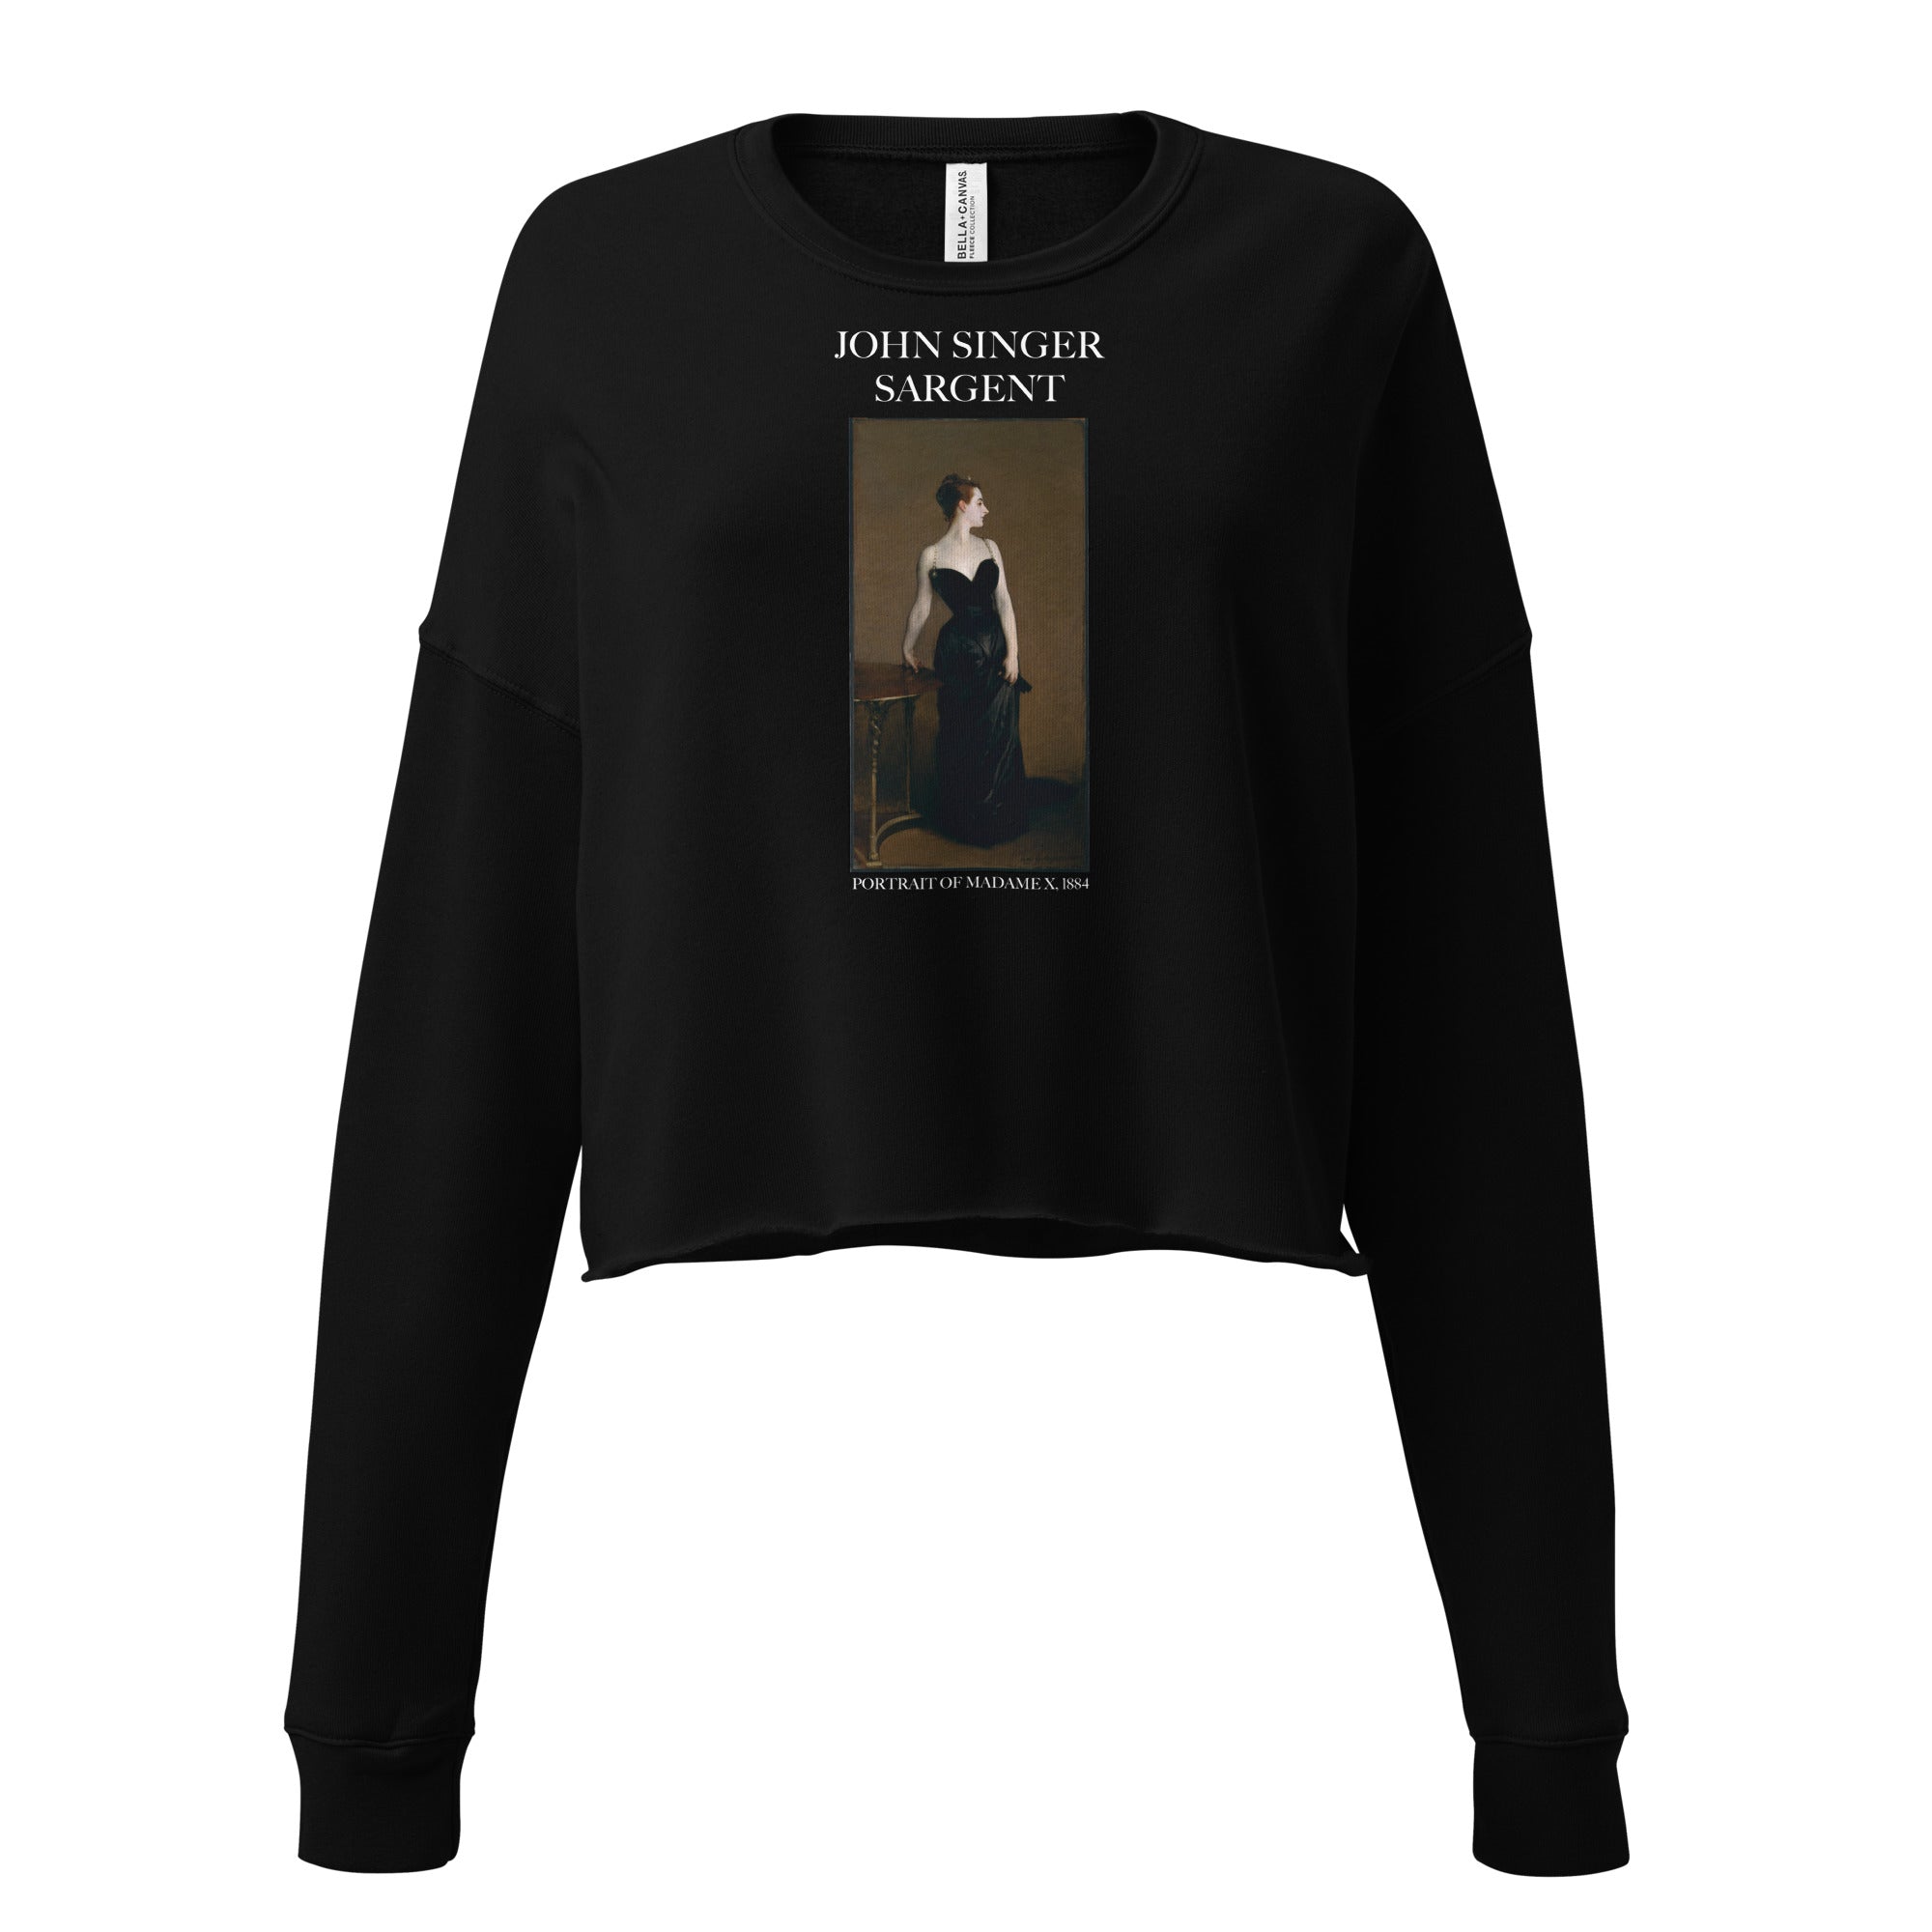 Kurzes Sweatshirt mit dem berühmten Gemälde „Portrait of Madame X“ von John Singer Sargent | Kurzes Sweatshirt mit Premium-Kunstmotiv